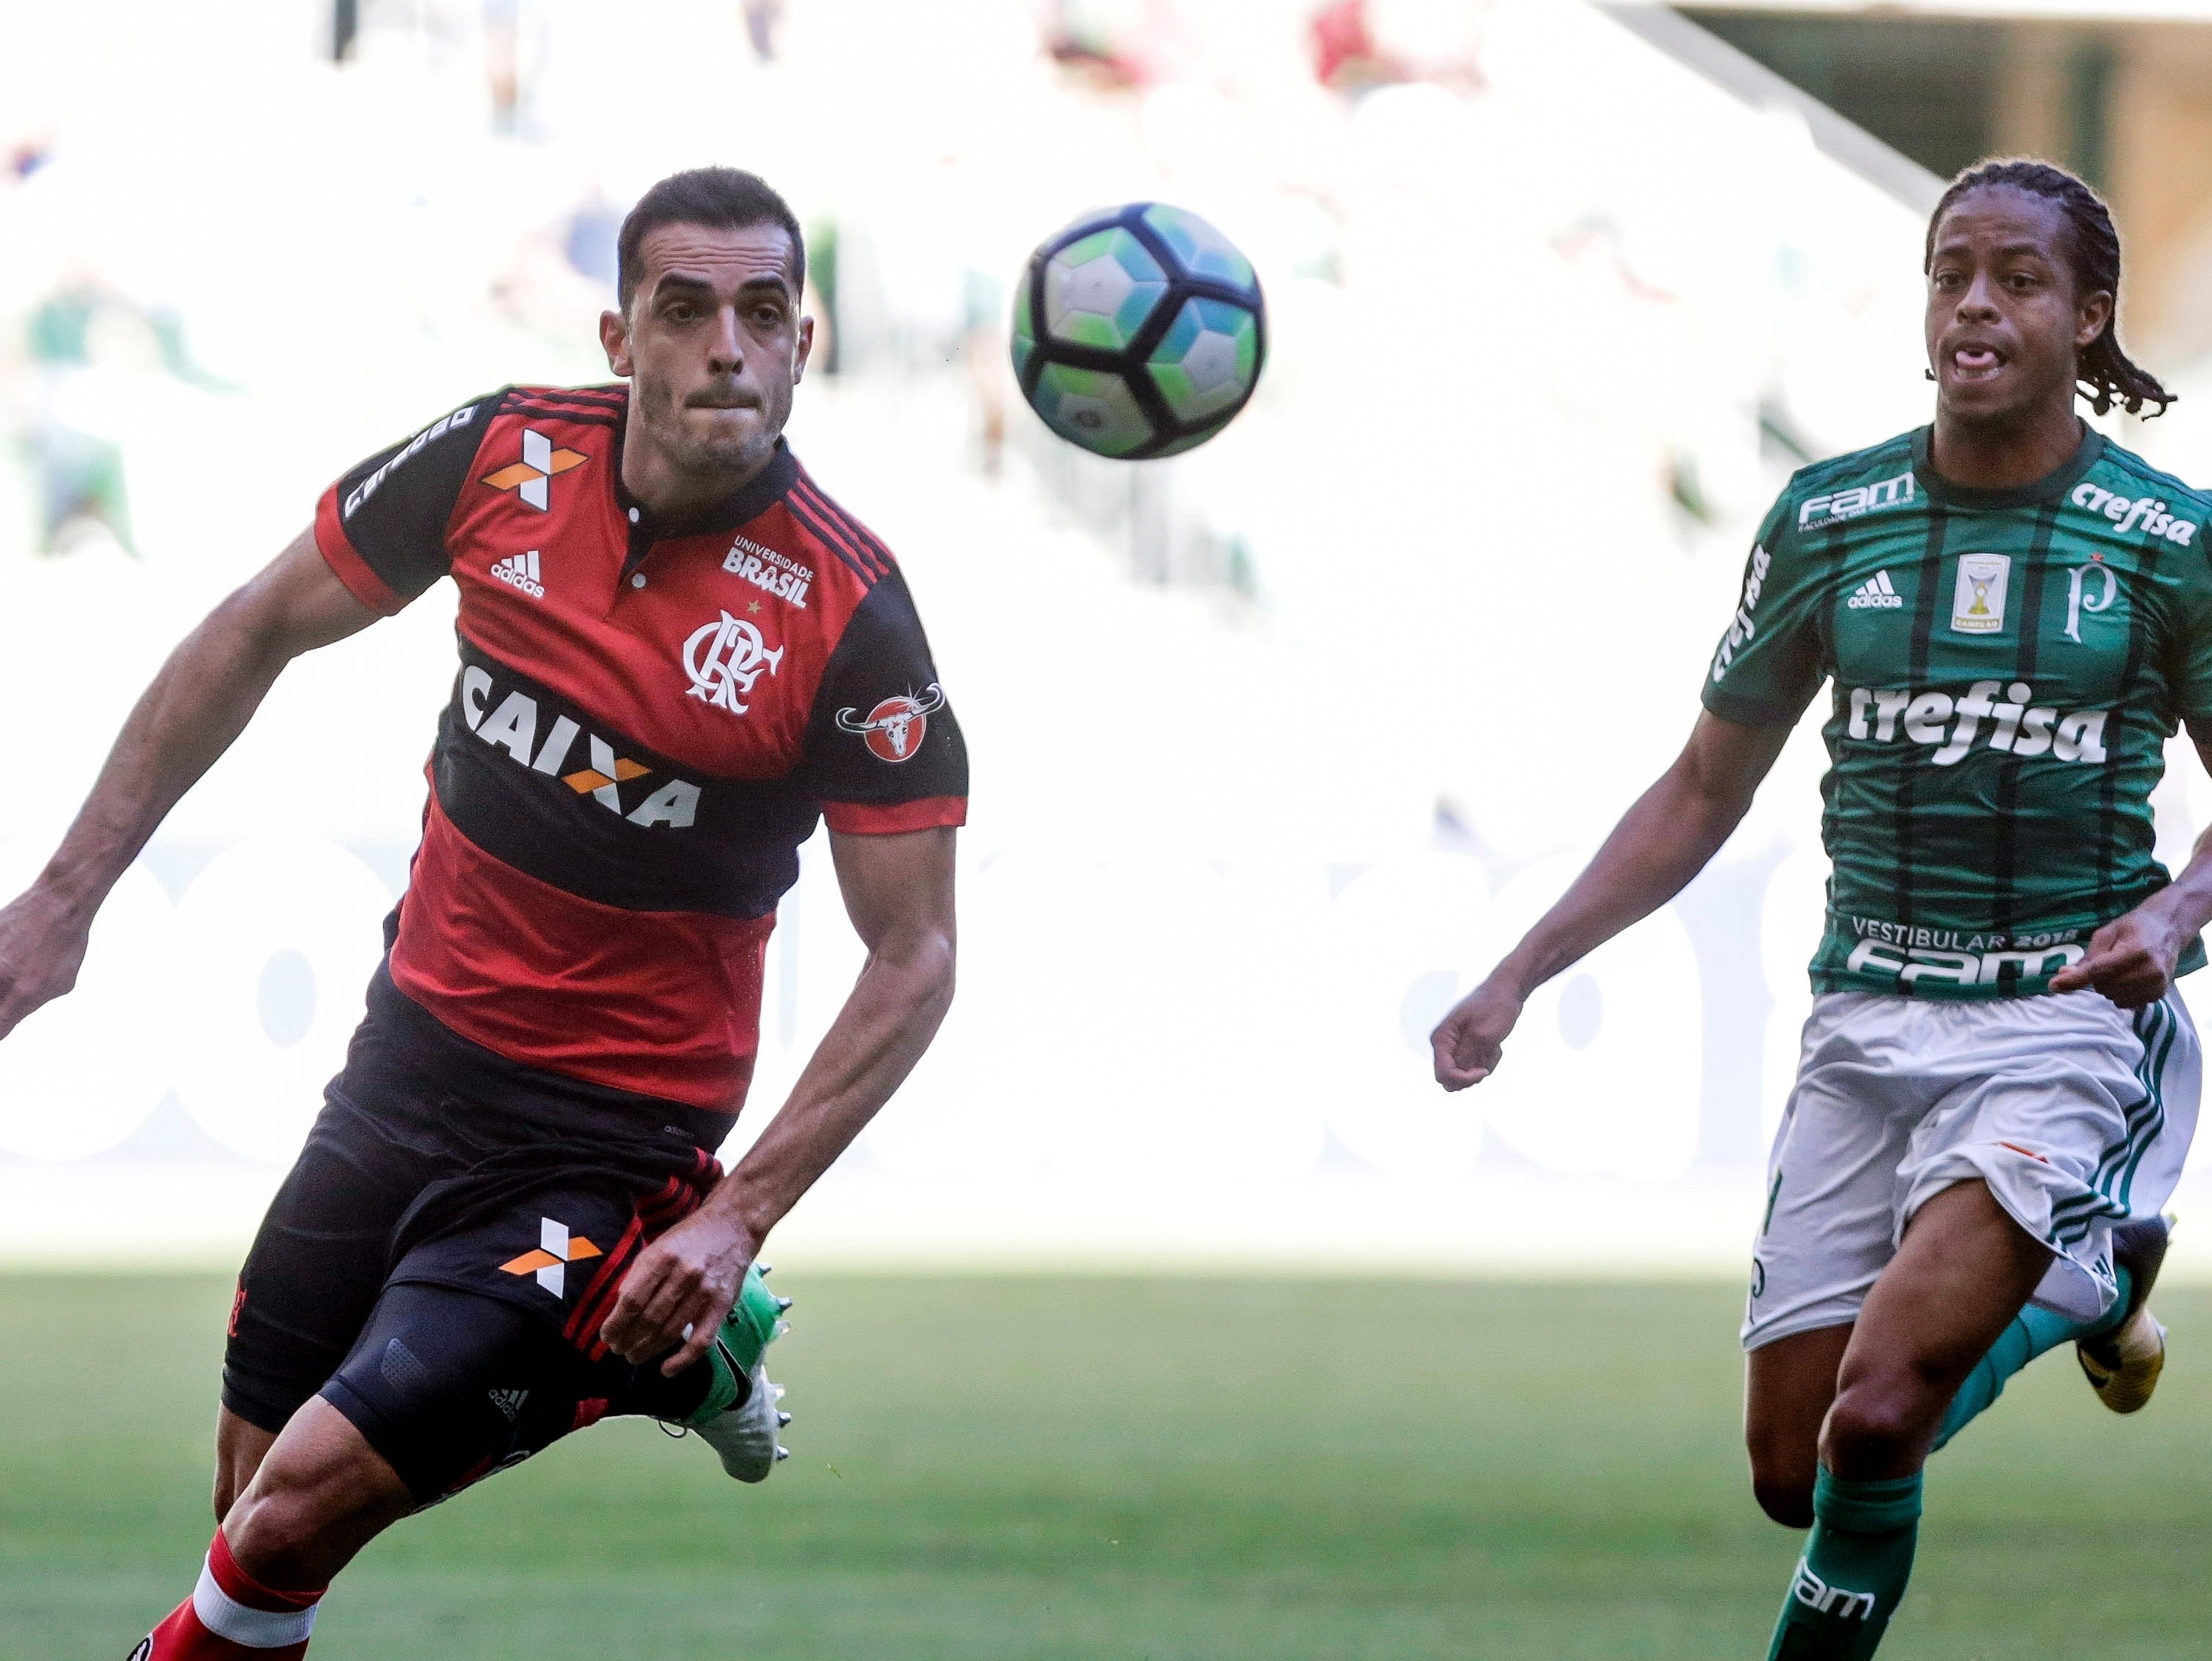 Flamengo tem larga vantagem contra o Palmeiras nos últimos dez jogos